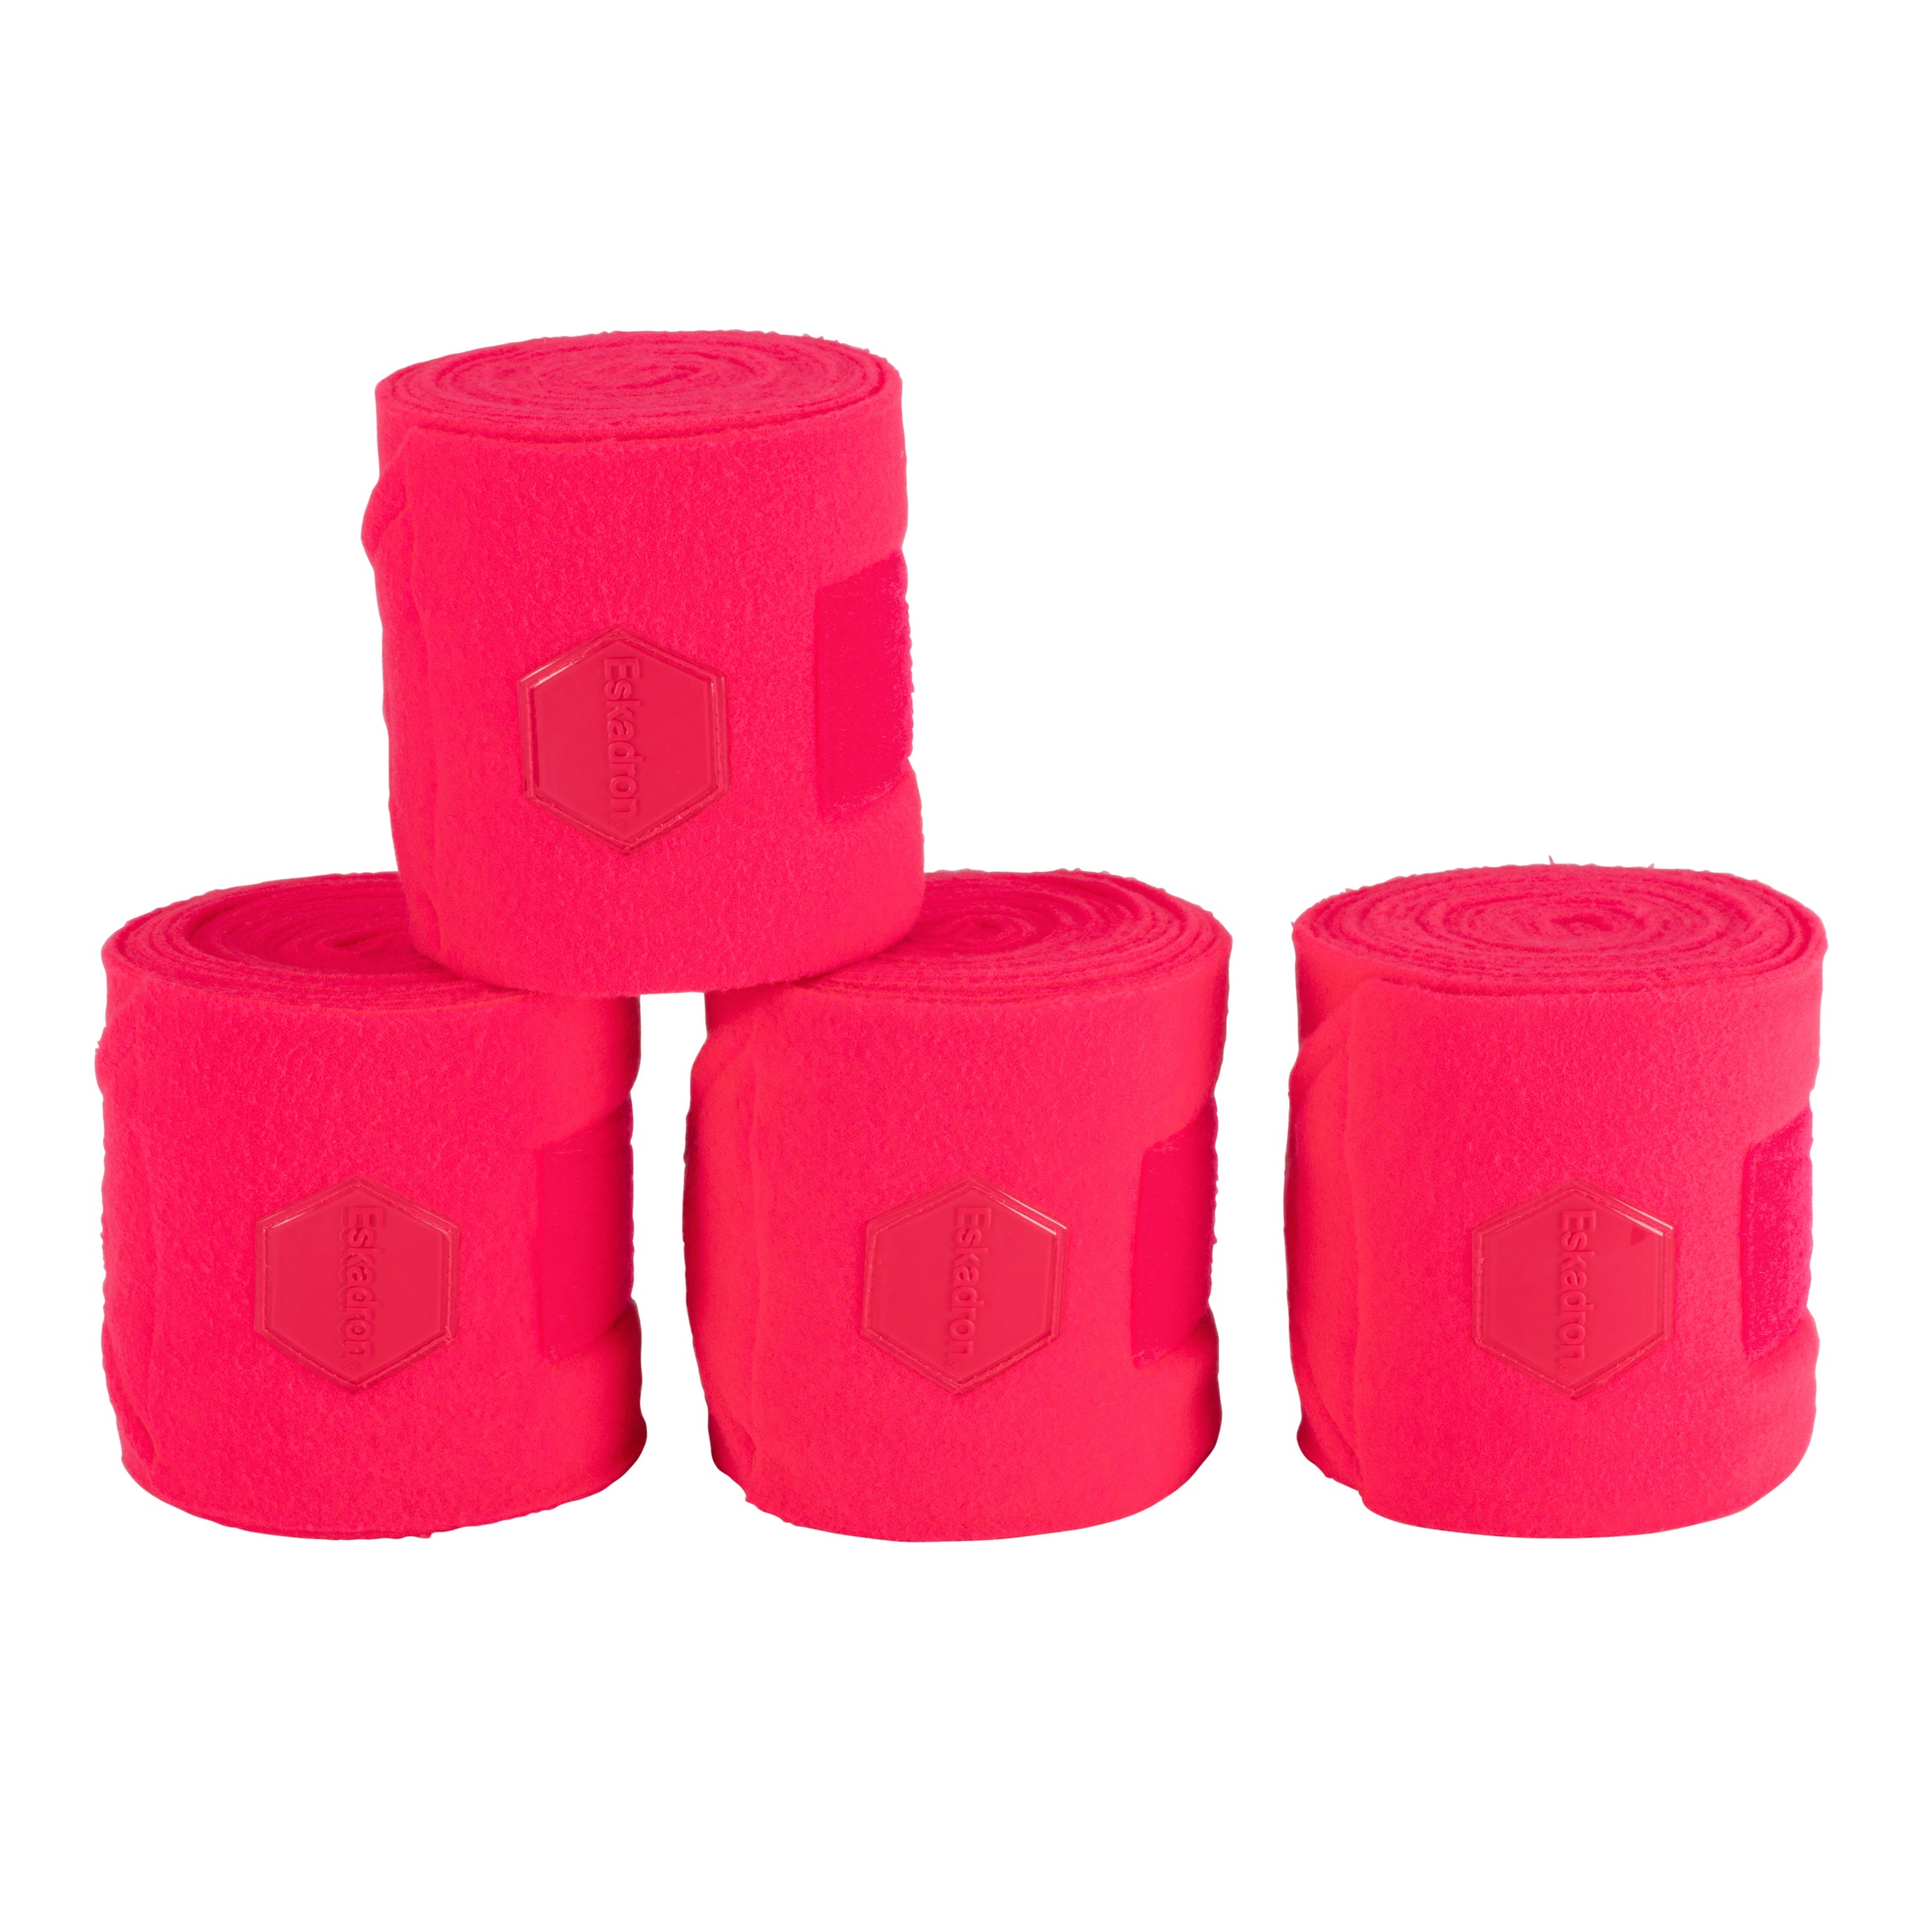 Eskadron Reflex Pink PONY fleece bandages